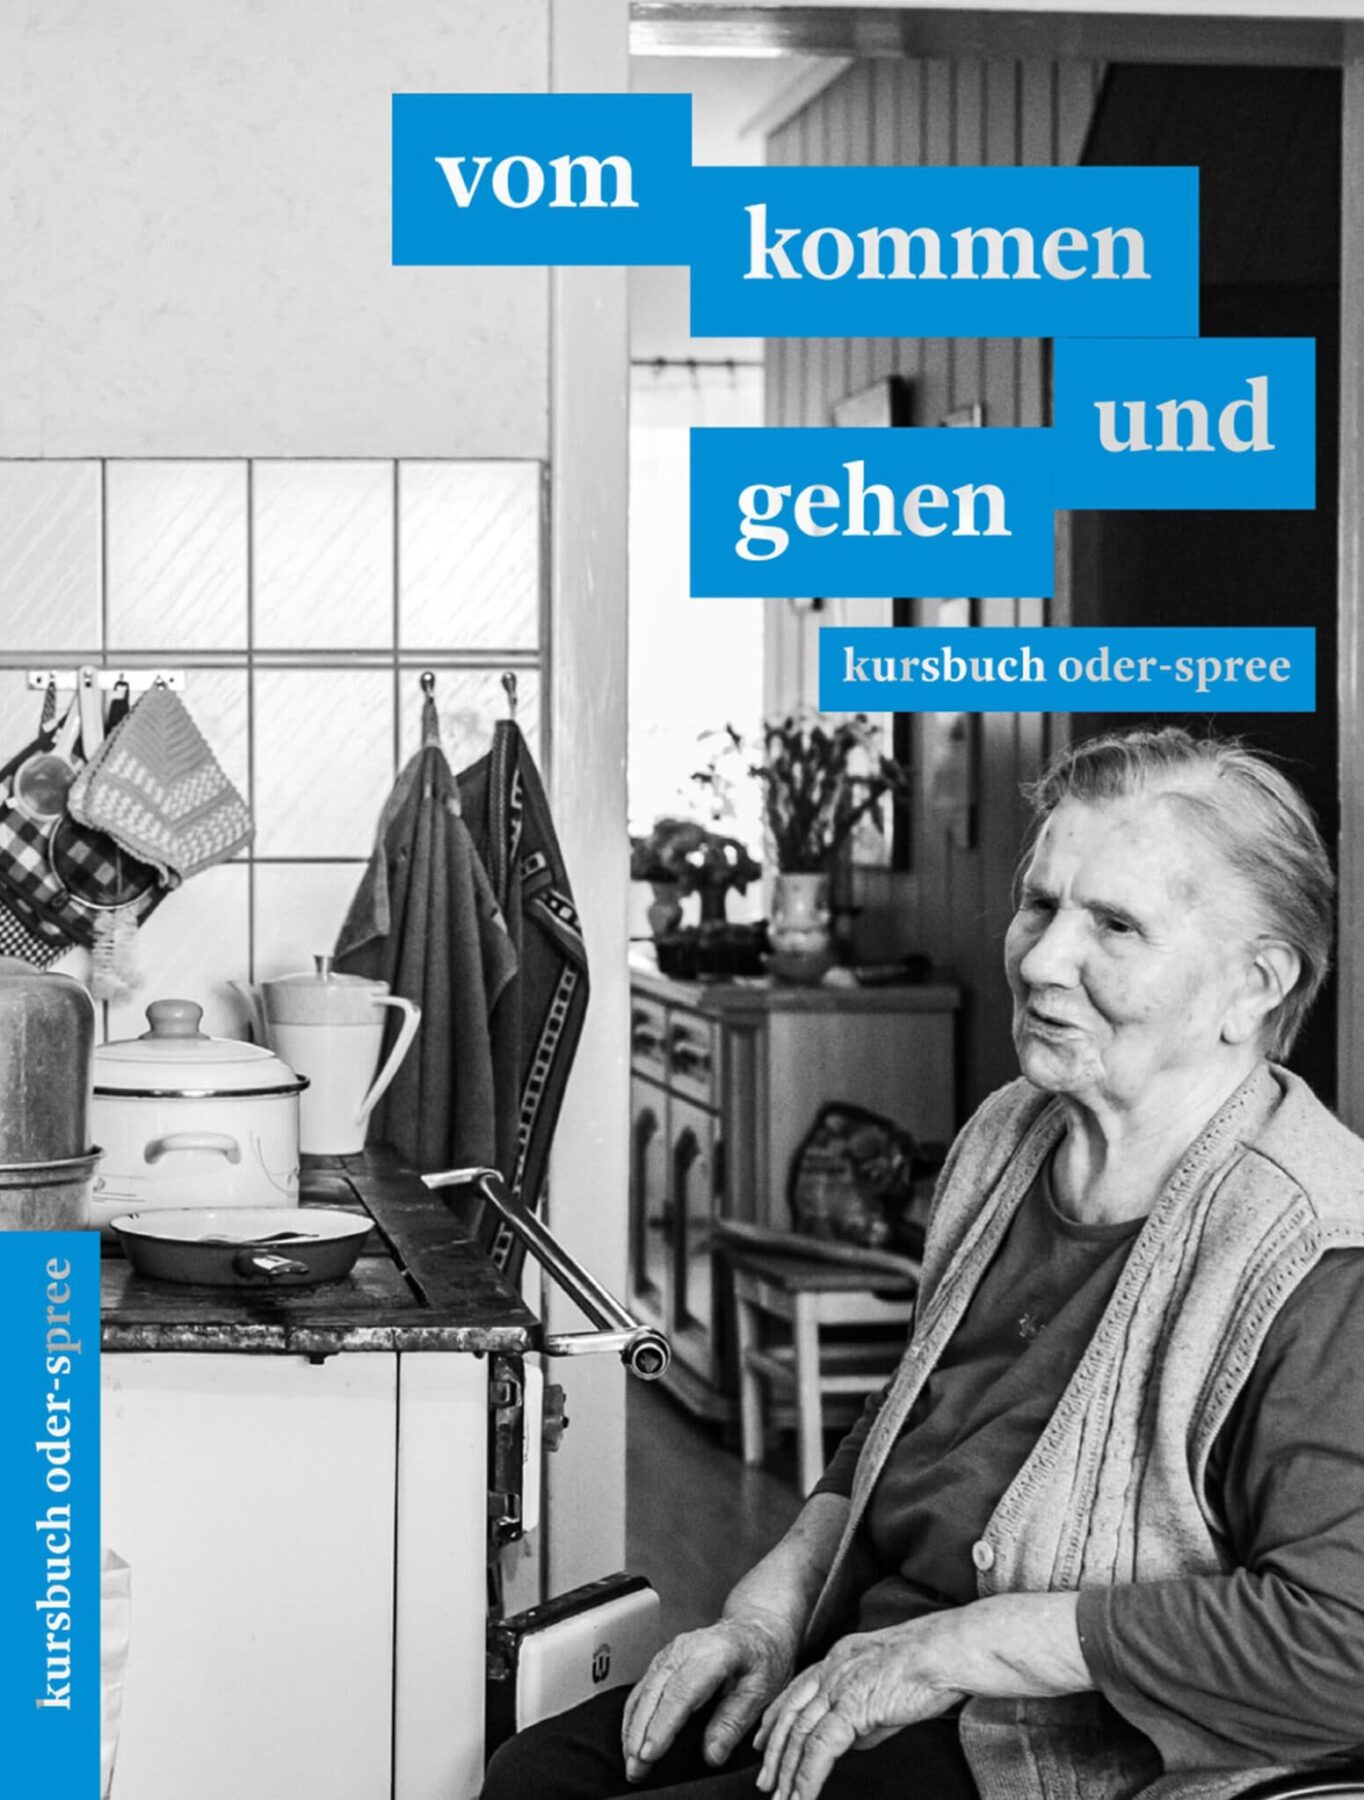 Buchcover, schwarz/weiß, eine ältere Frau sitzt in ihrer Küche. Blau hinterlegt in weißer Schrift steht: vom kommen und gehen, Kursbuch Oder-Spree